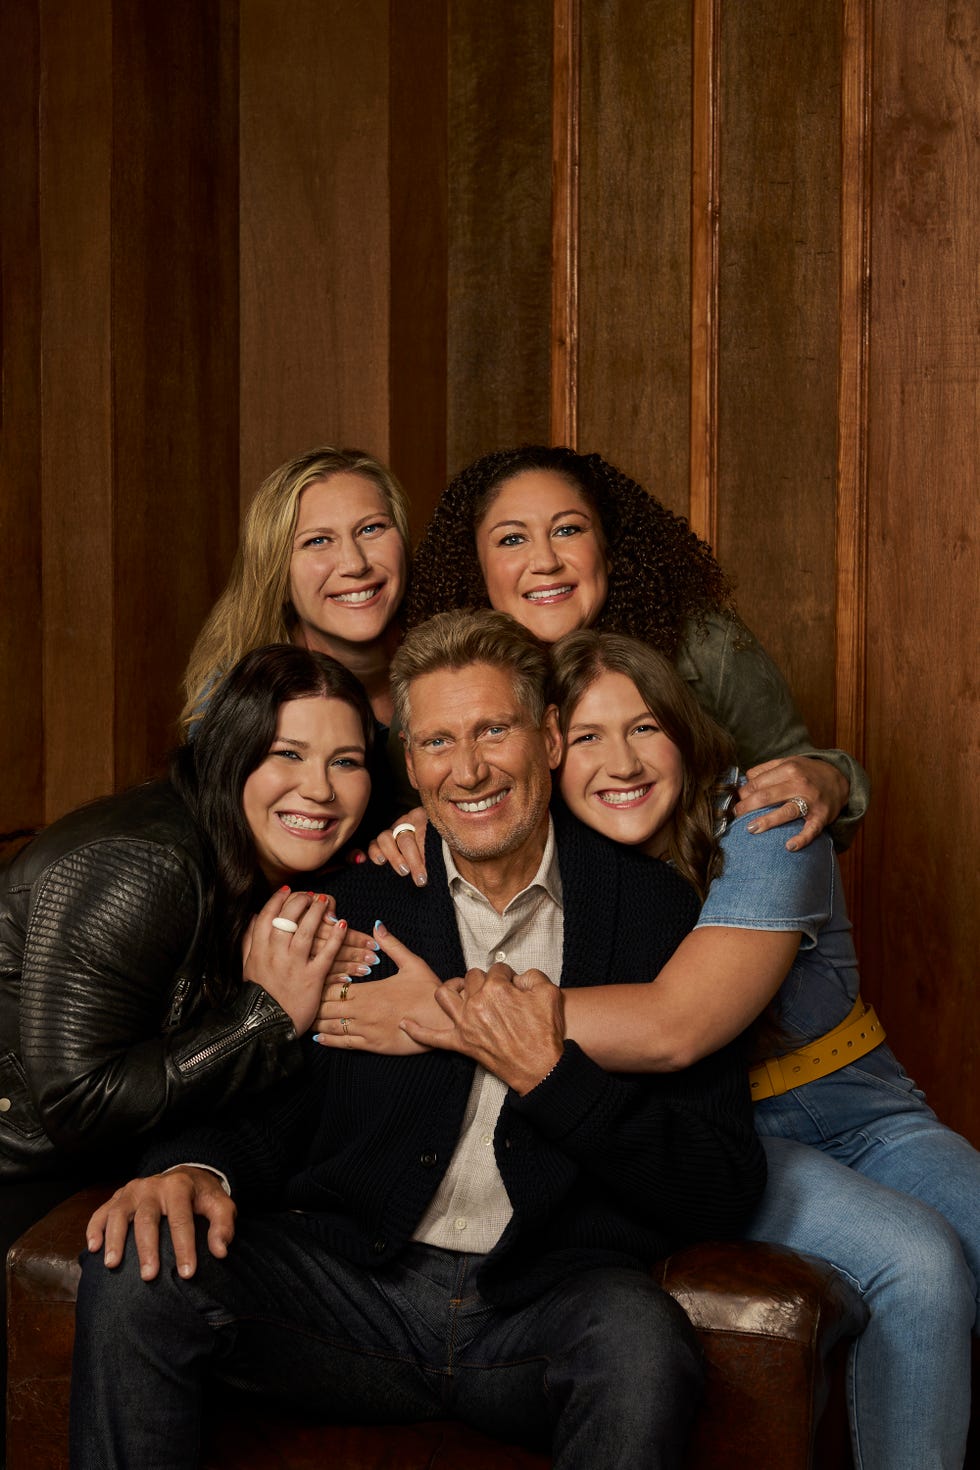 The Golden Bachelor' Cast Photos: Meet the Women on New Season